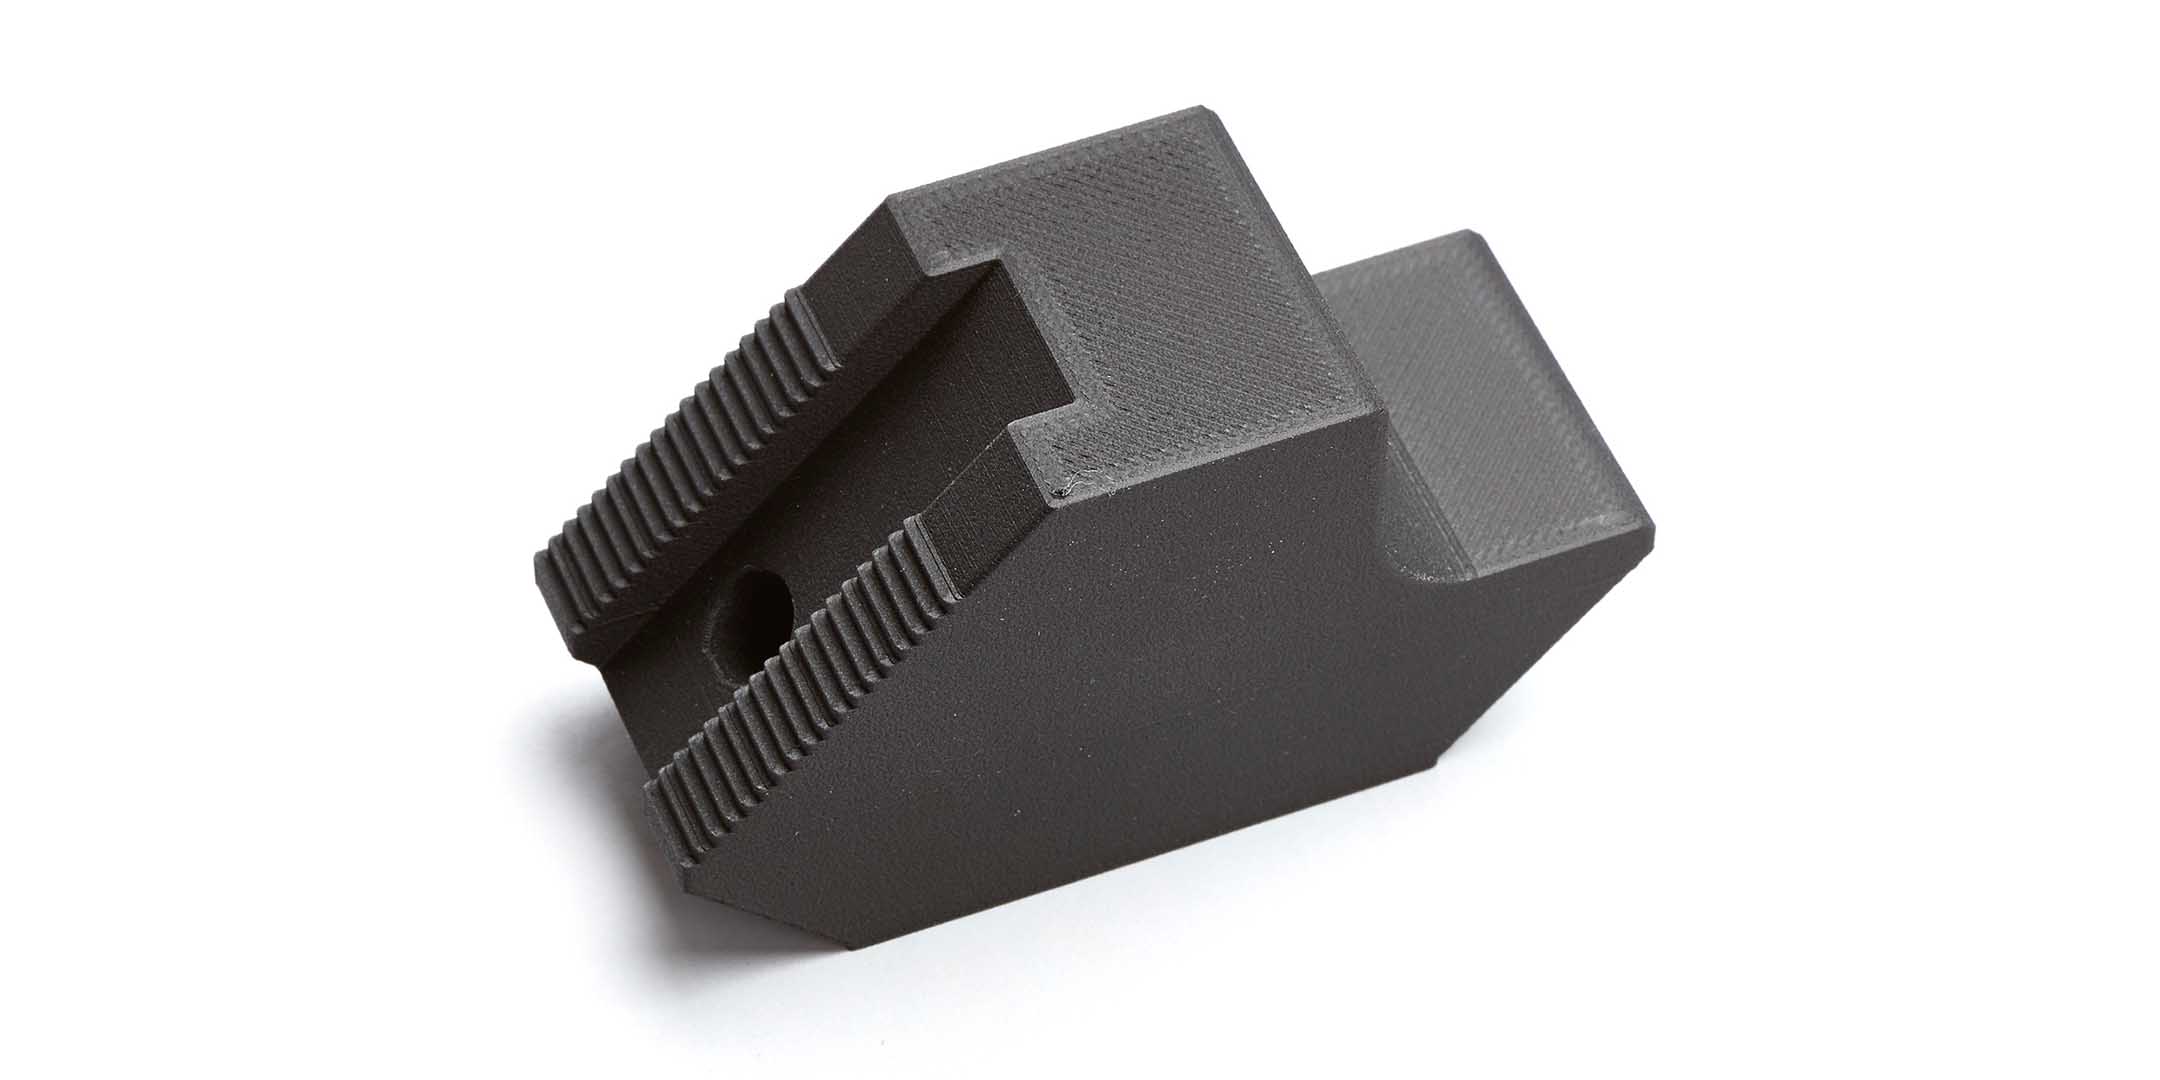 A 3D printed gripper finger part